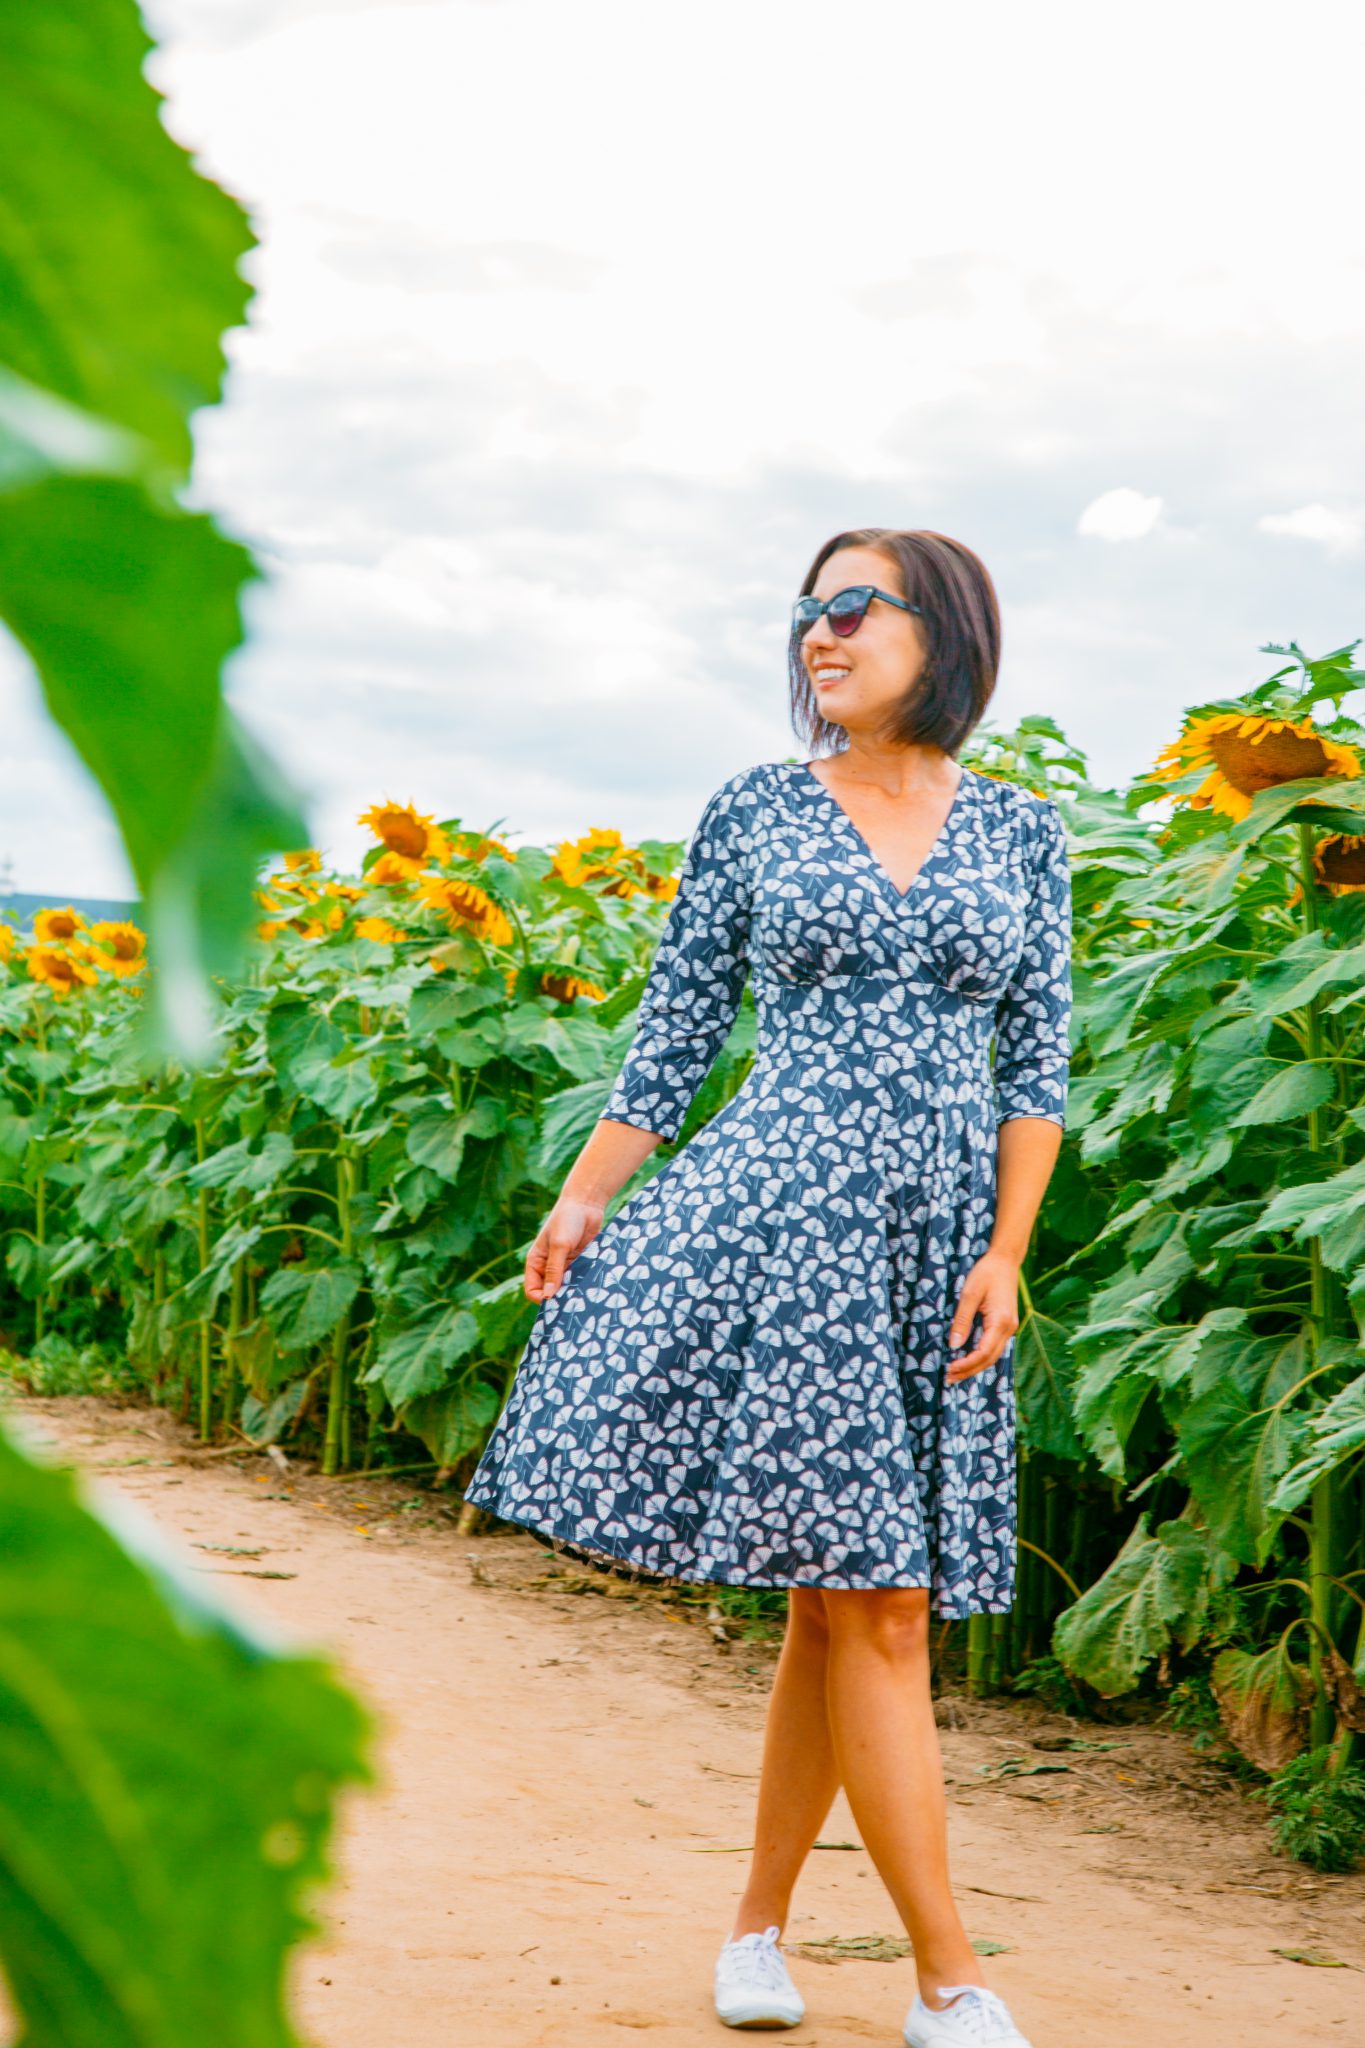 Wearing Karina Megan Dress in a sunflower field in Wisconsin